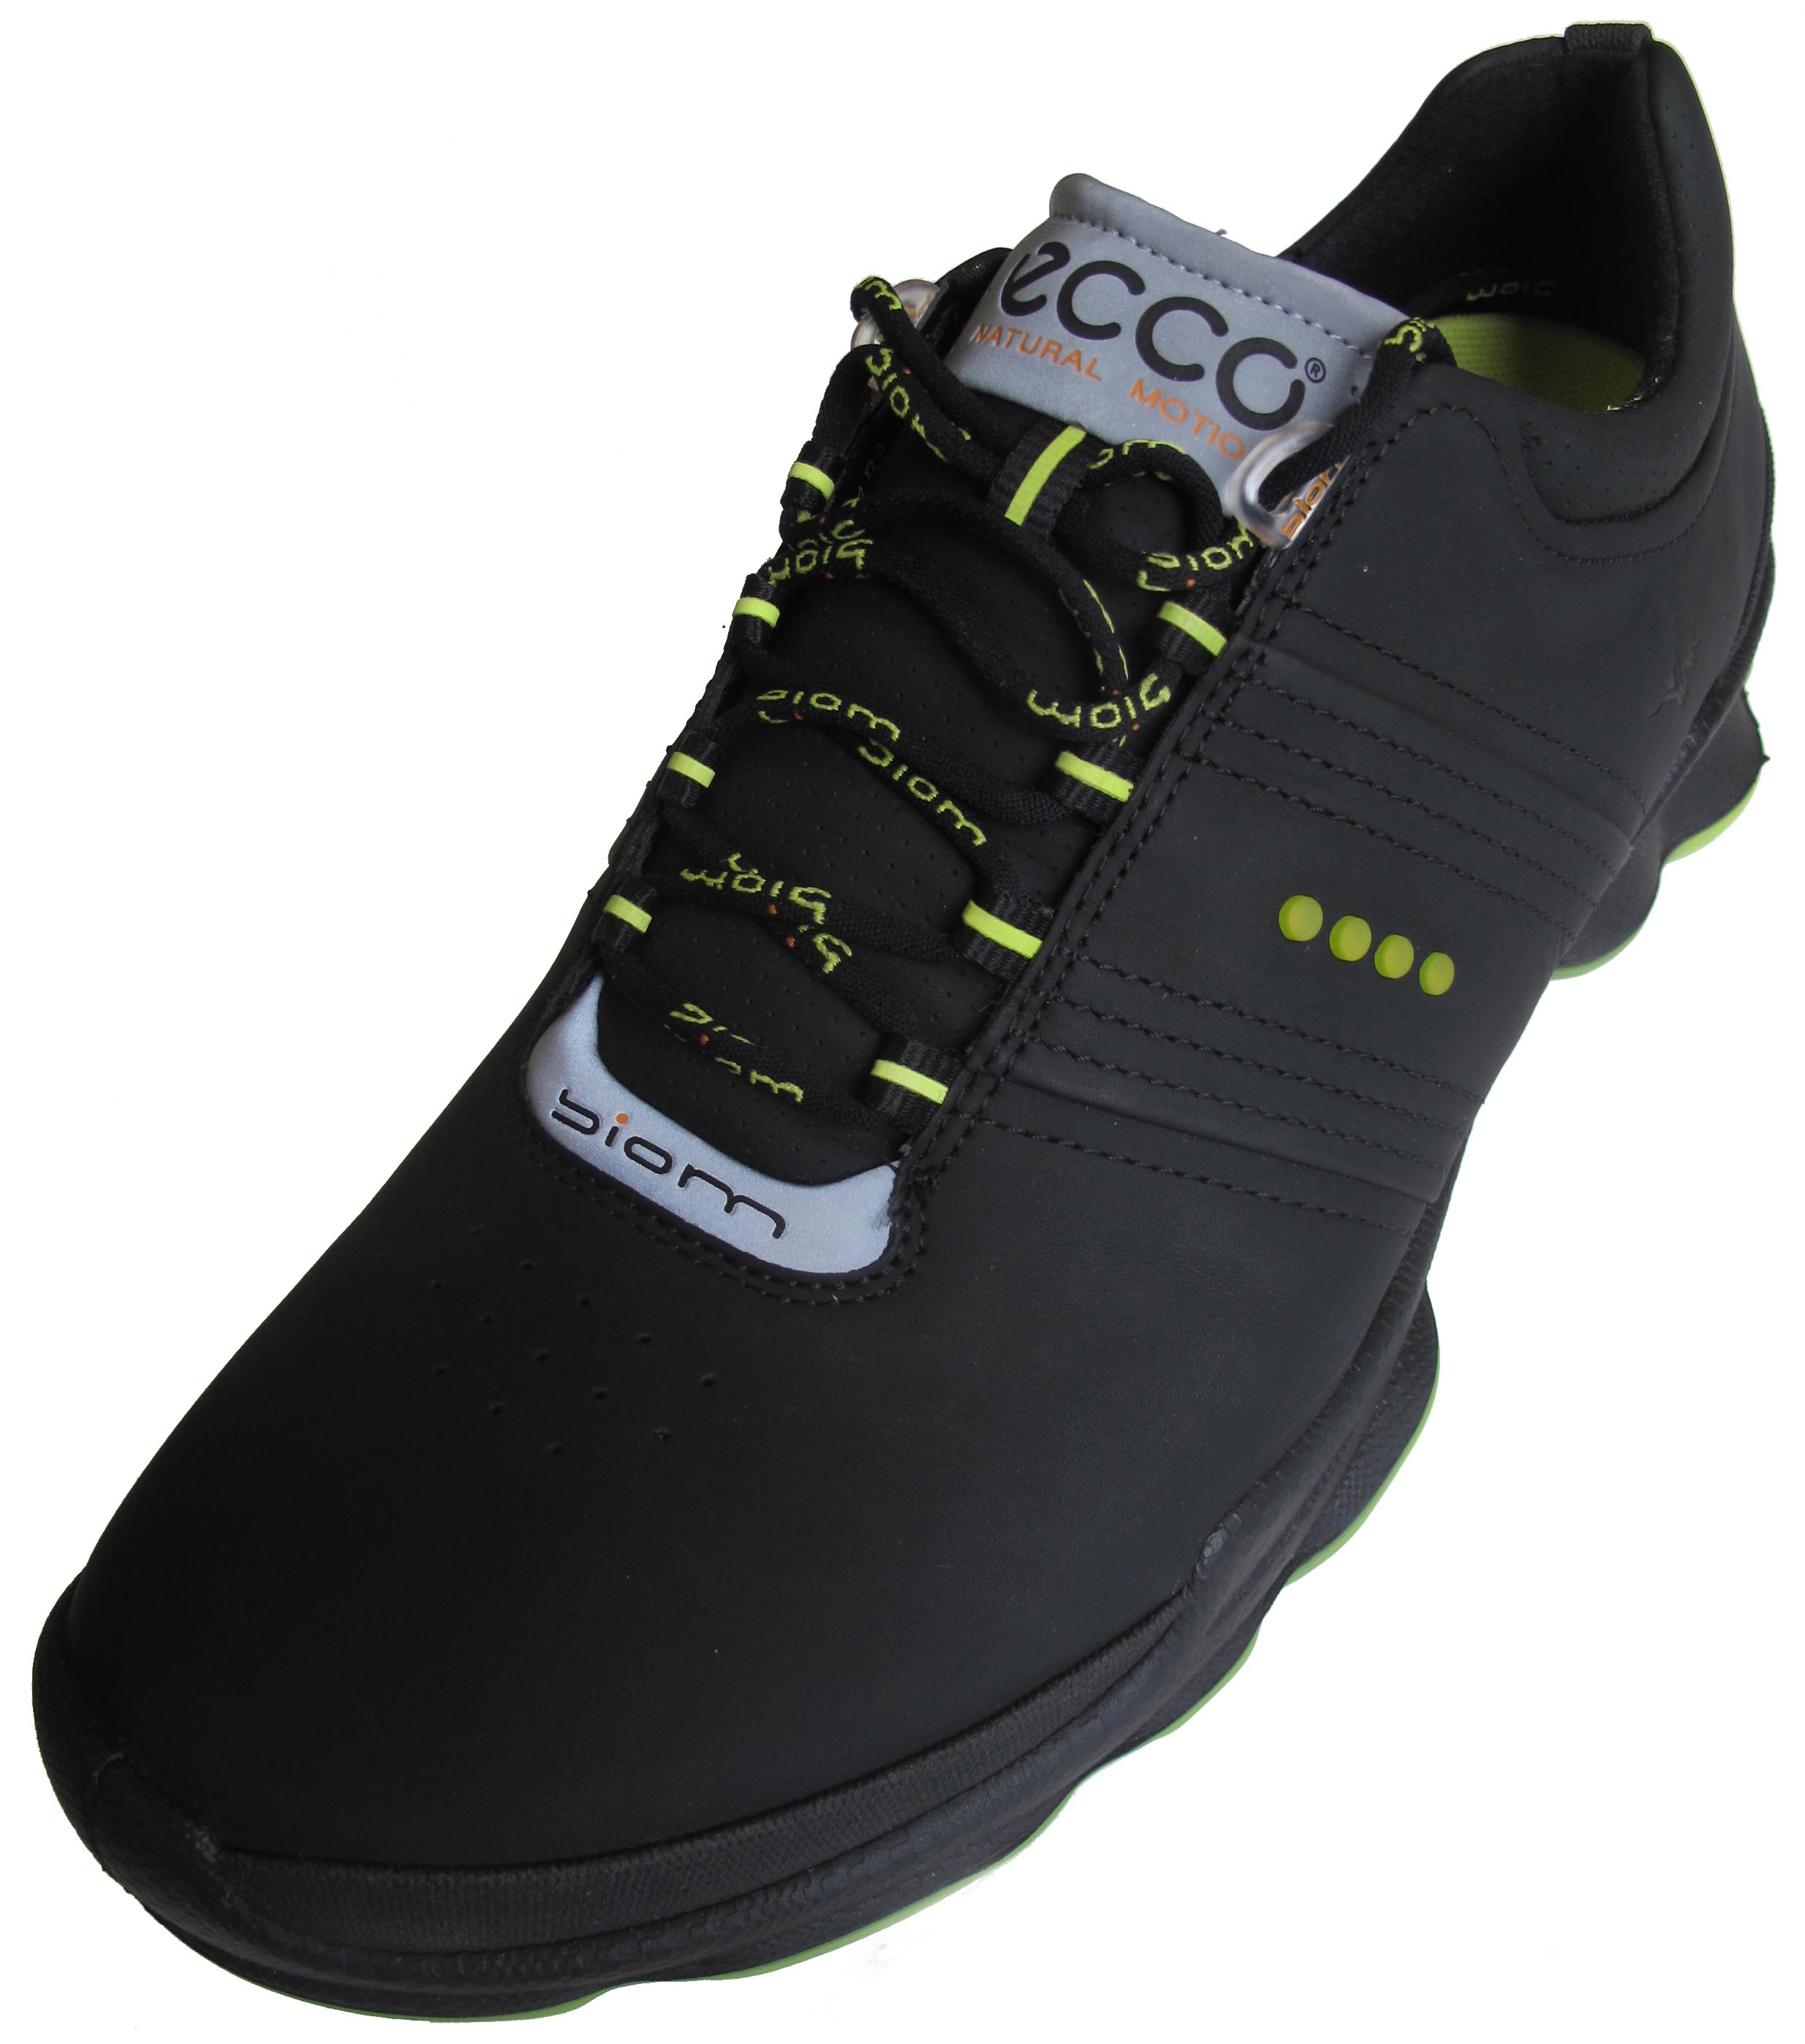 The new ECCO Biom golf shoe